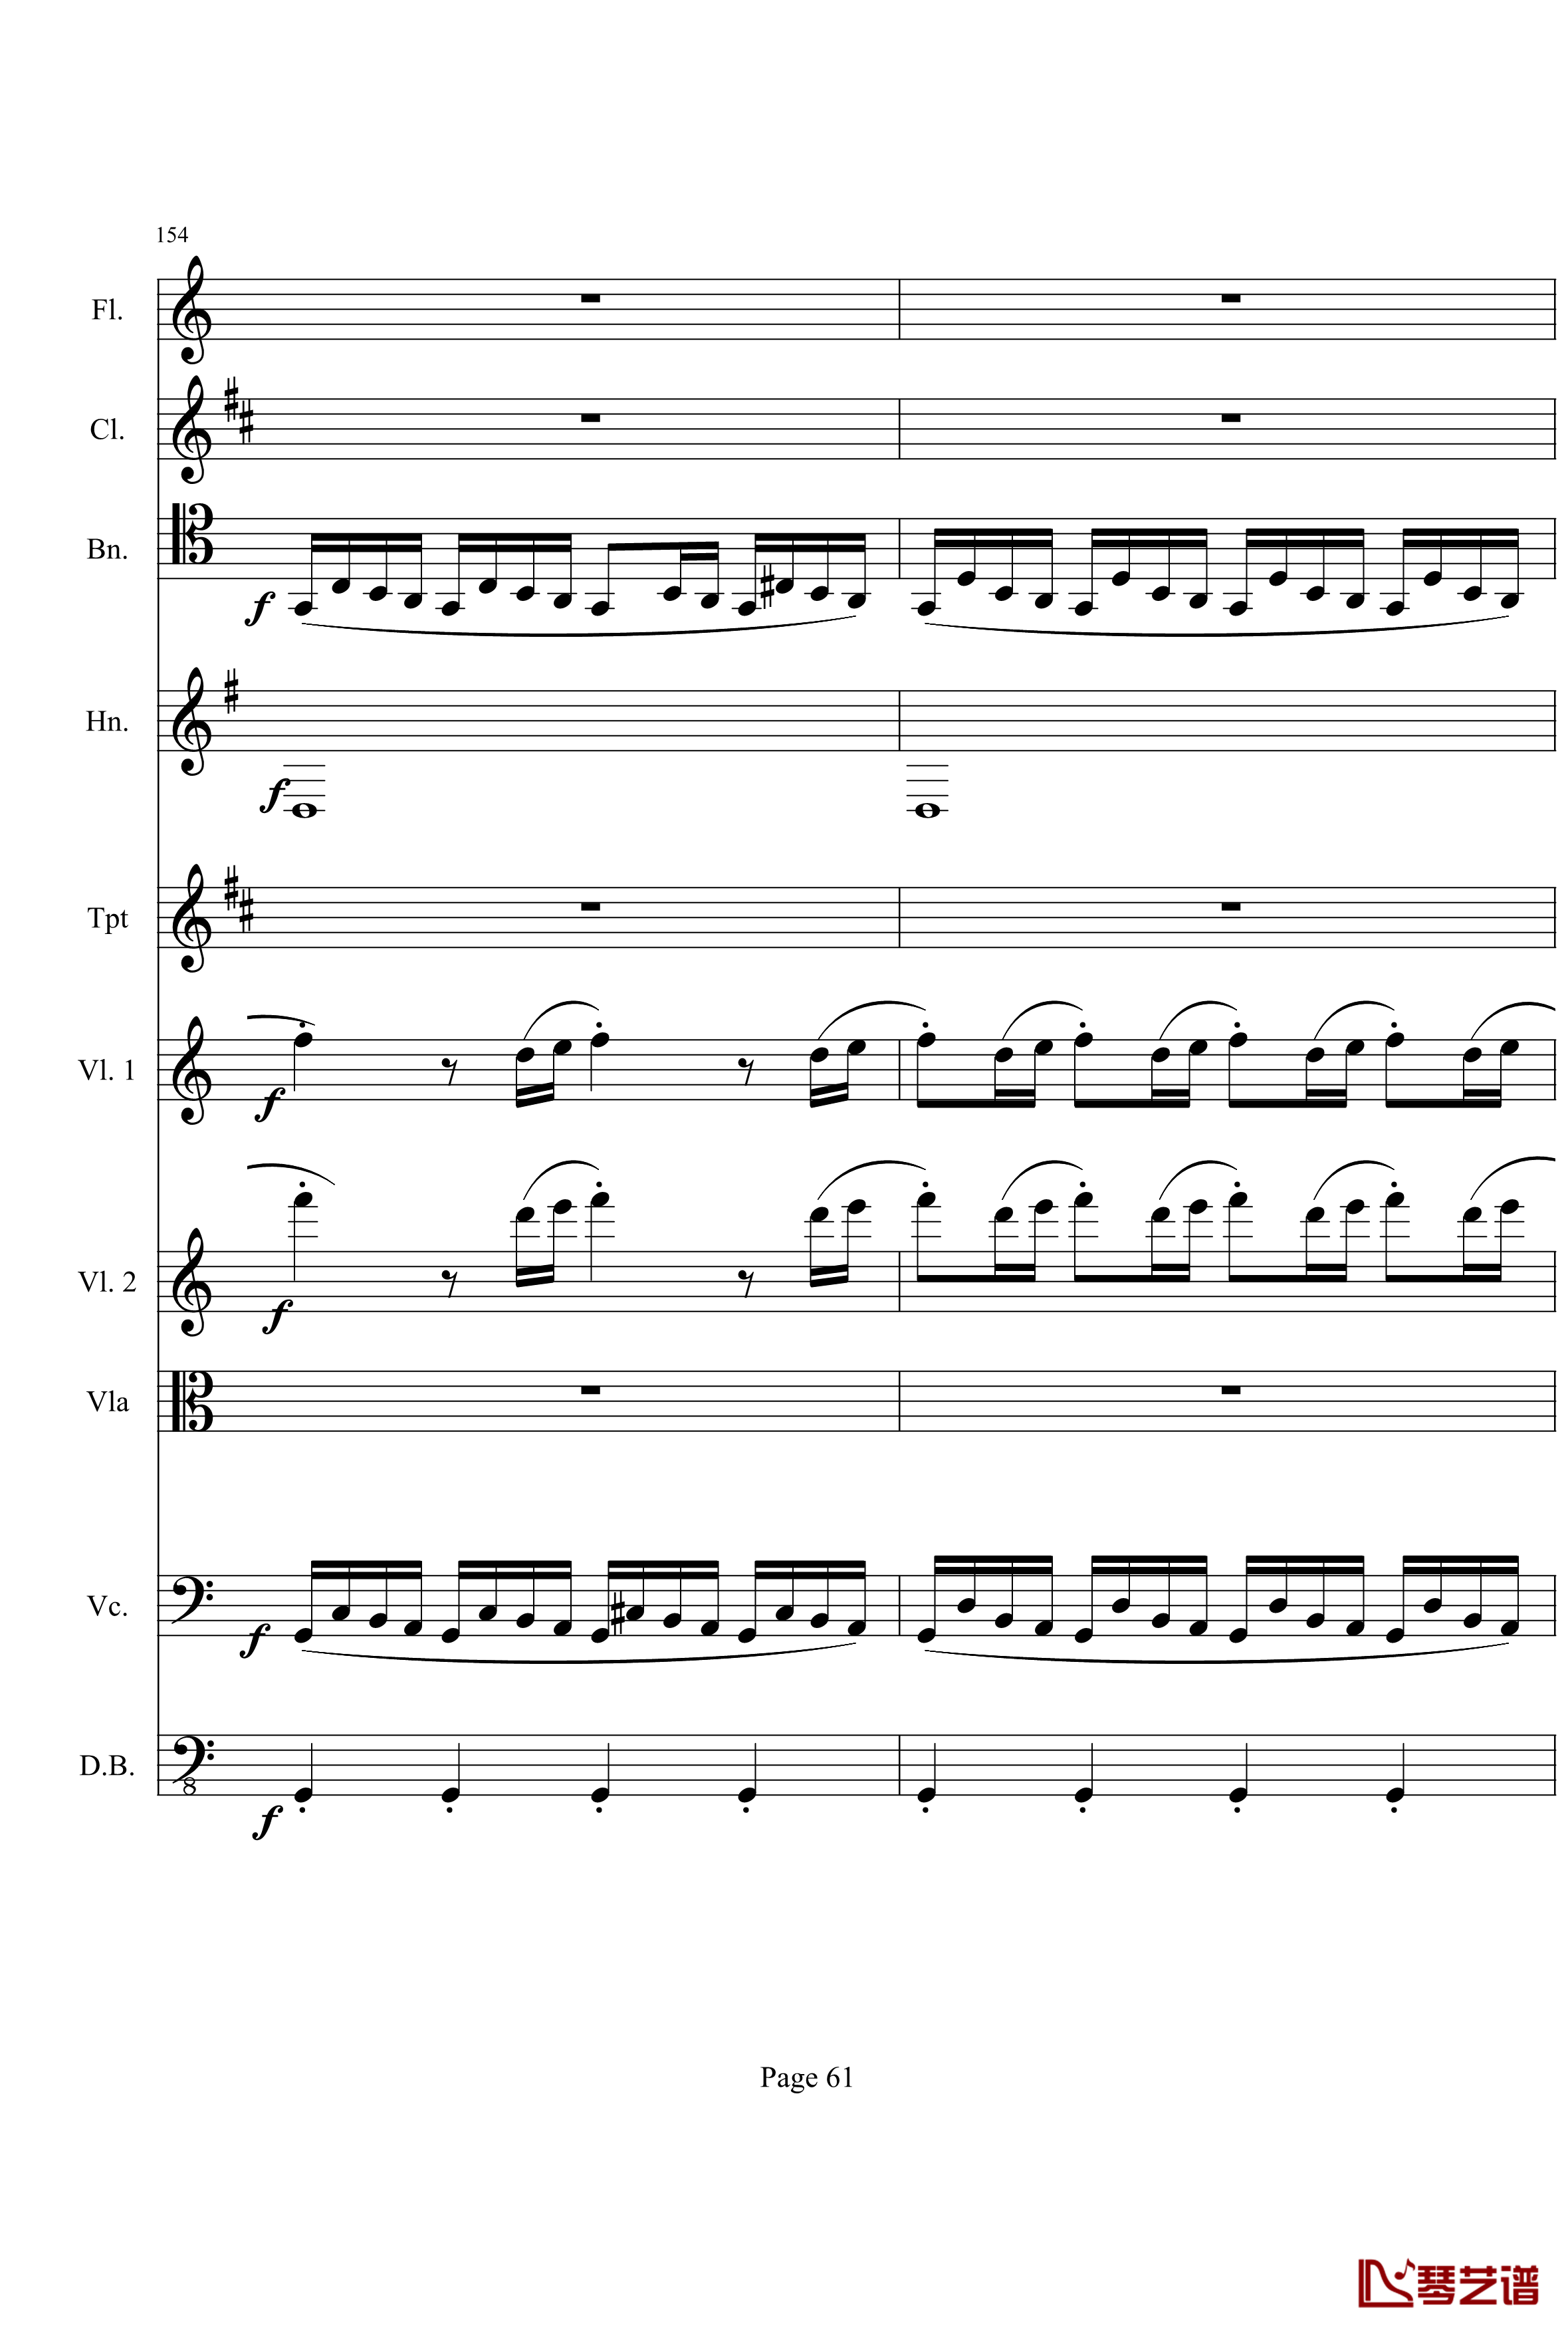 奏鸣曲之交响钢琴谱-第21-Ⅰ-贝多芬-beethoven61